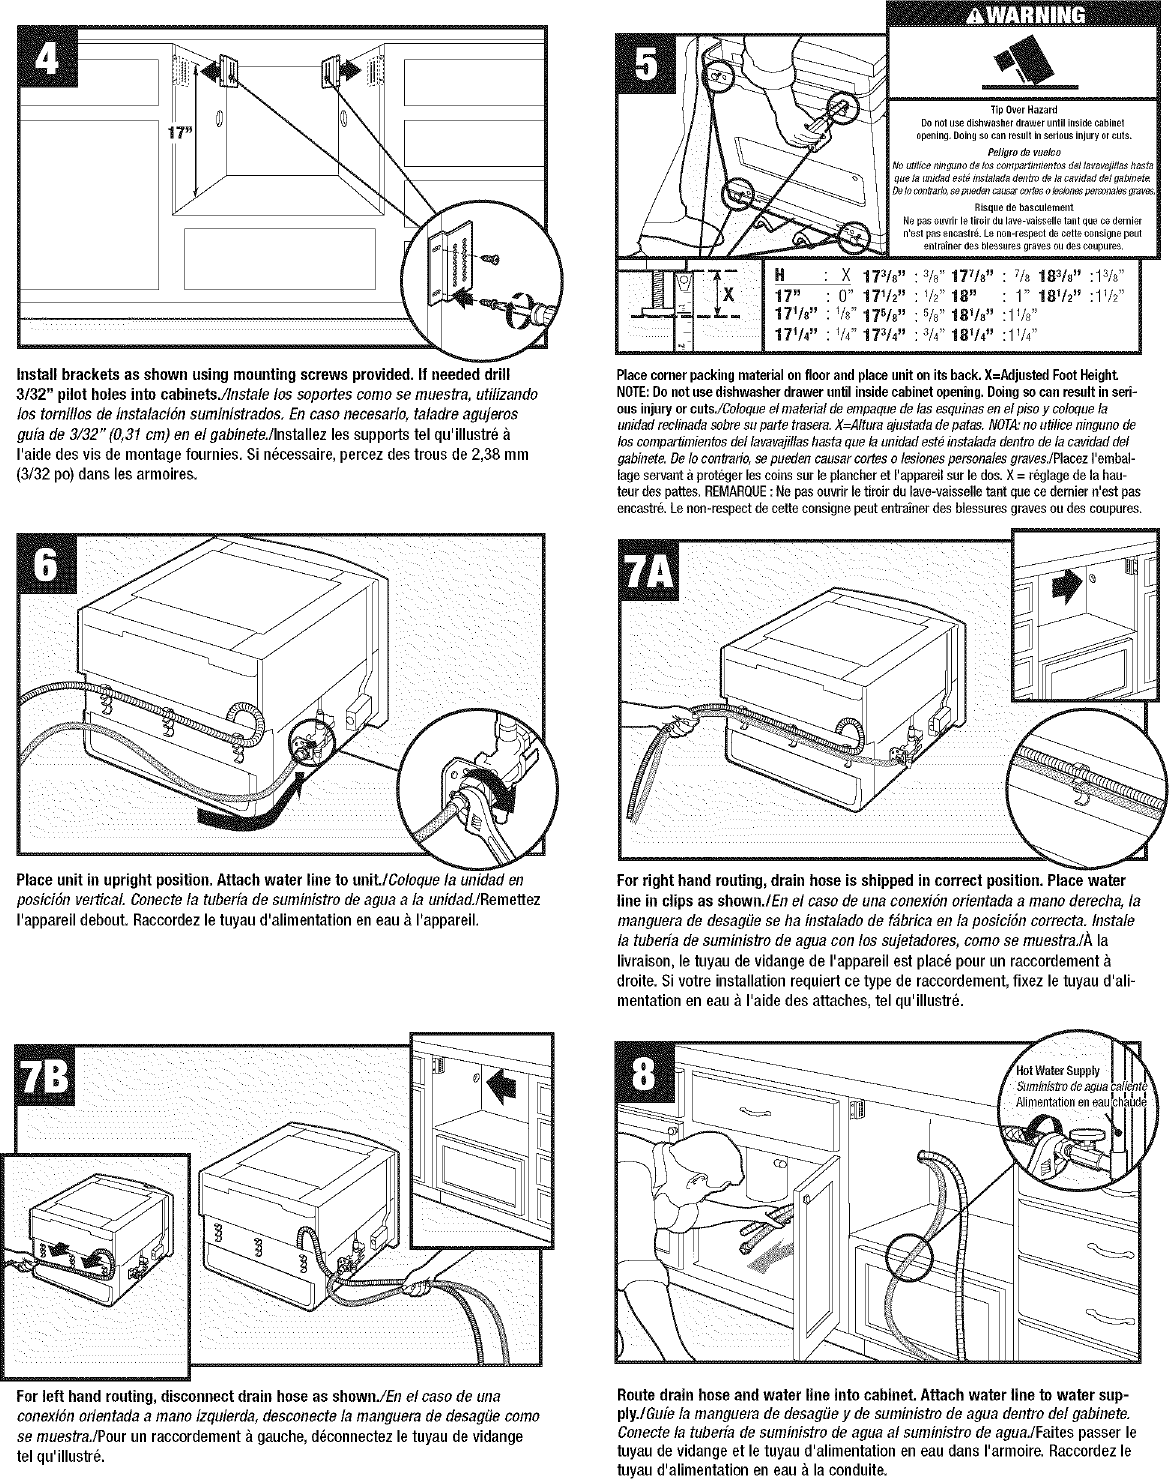 Page 4 of 10 - KENMORE  ELITE Dishwasher Manual L0703158